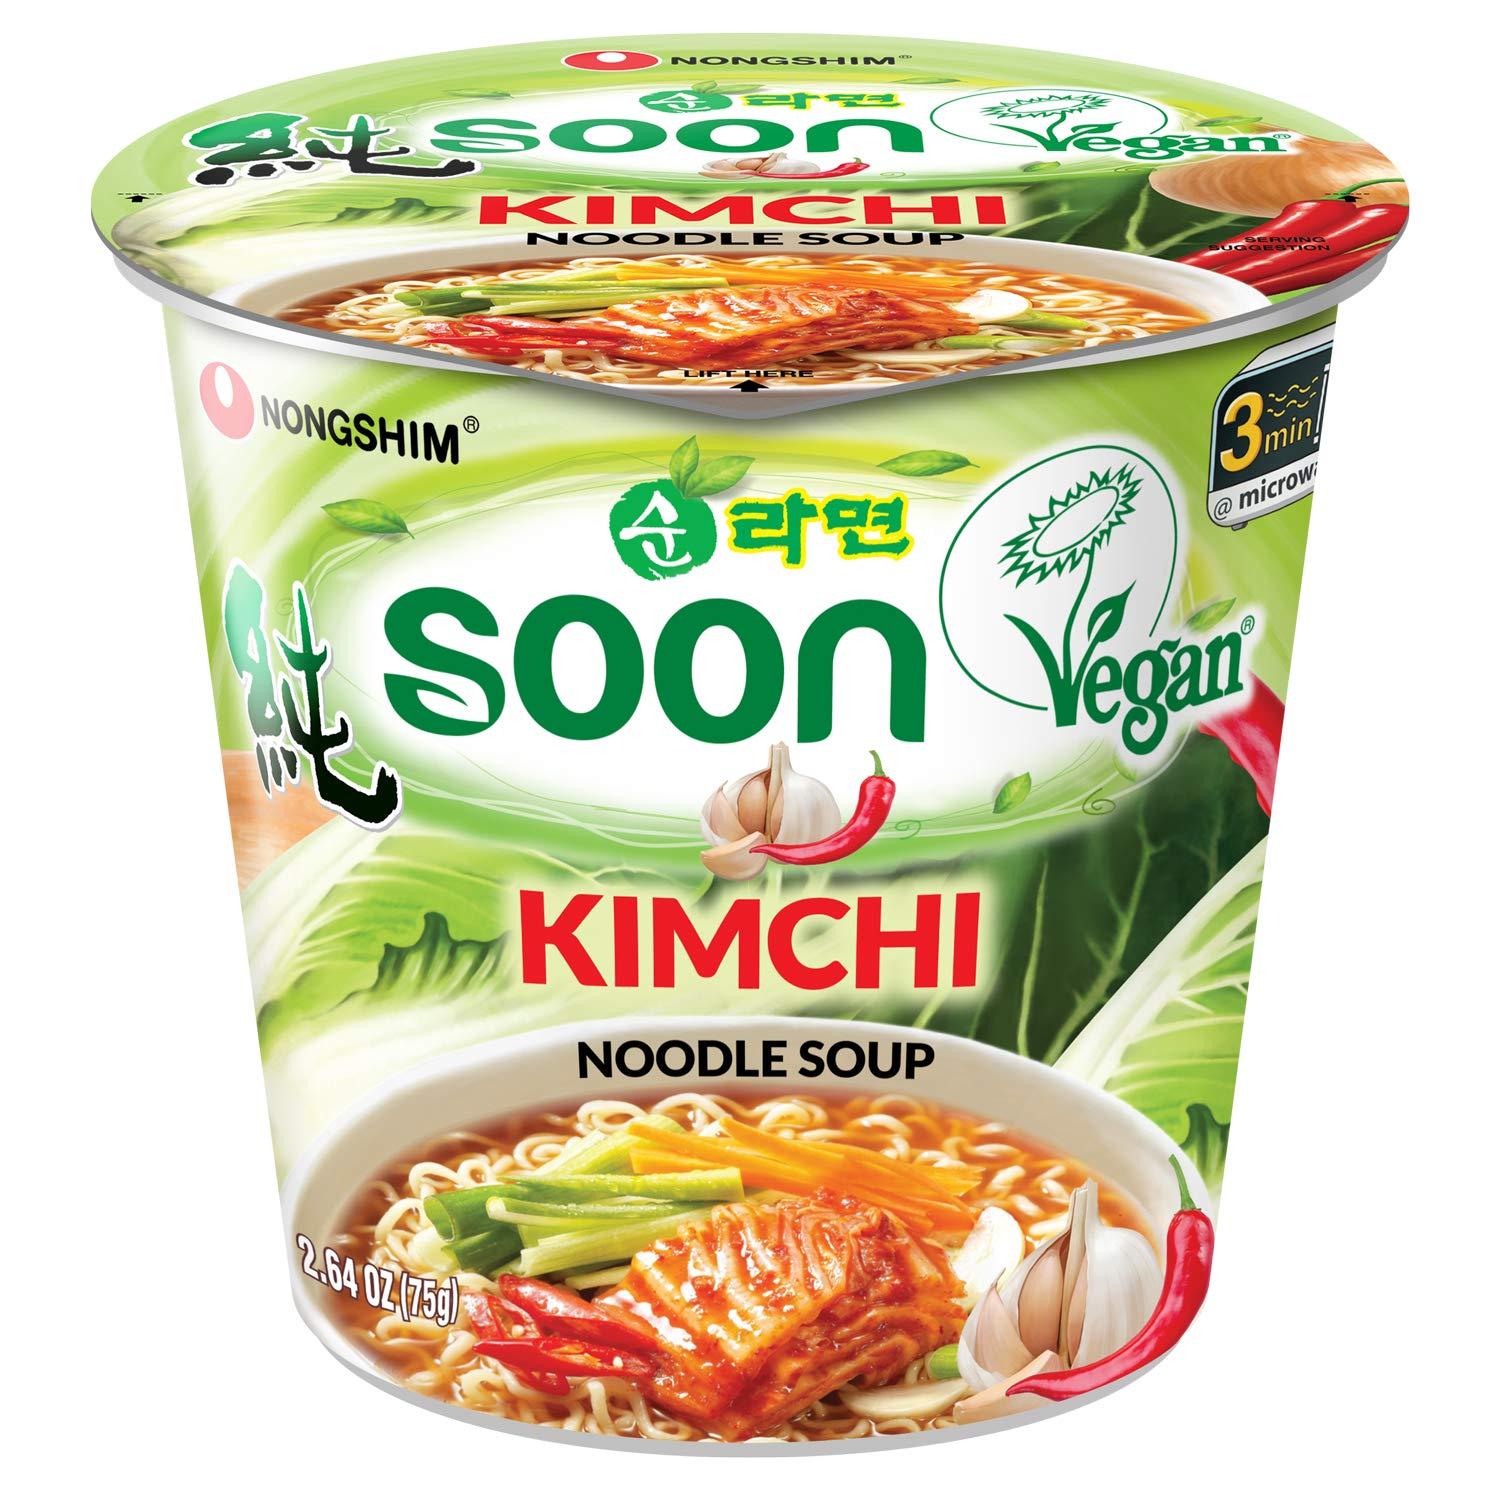 nongshim-soon-kimchi-noodle-soup